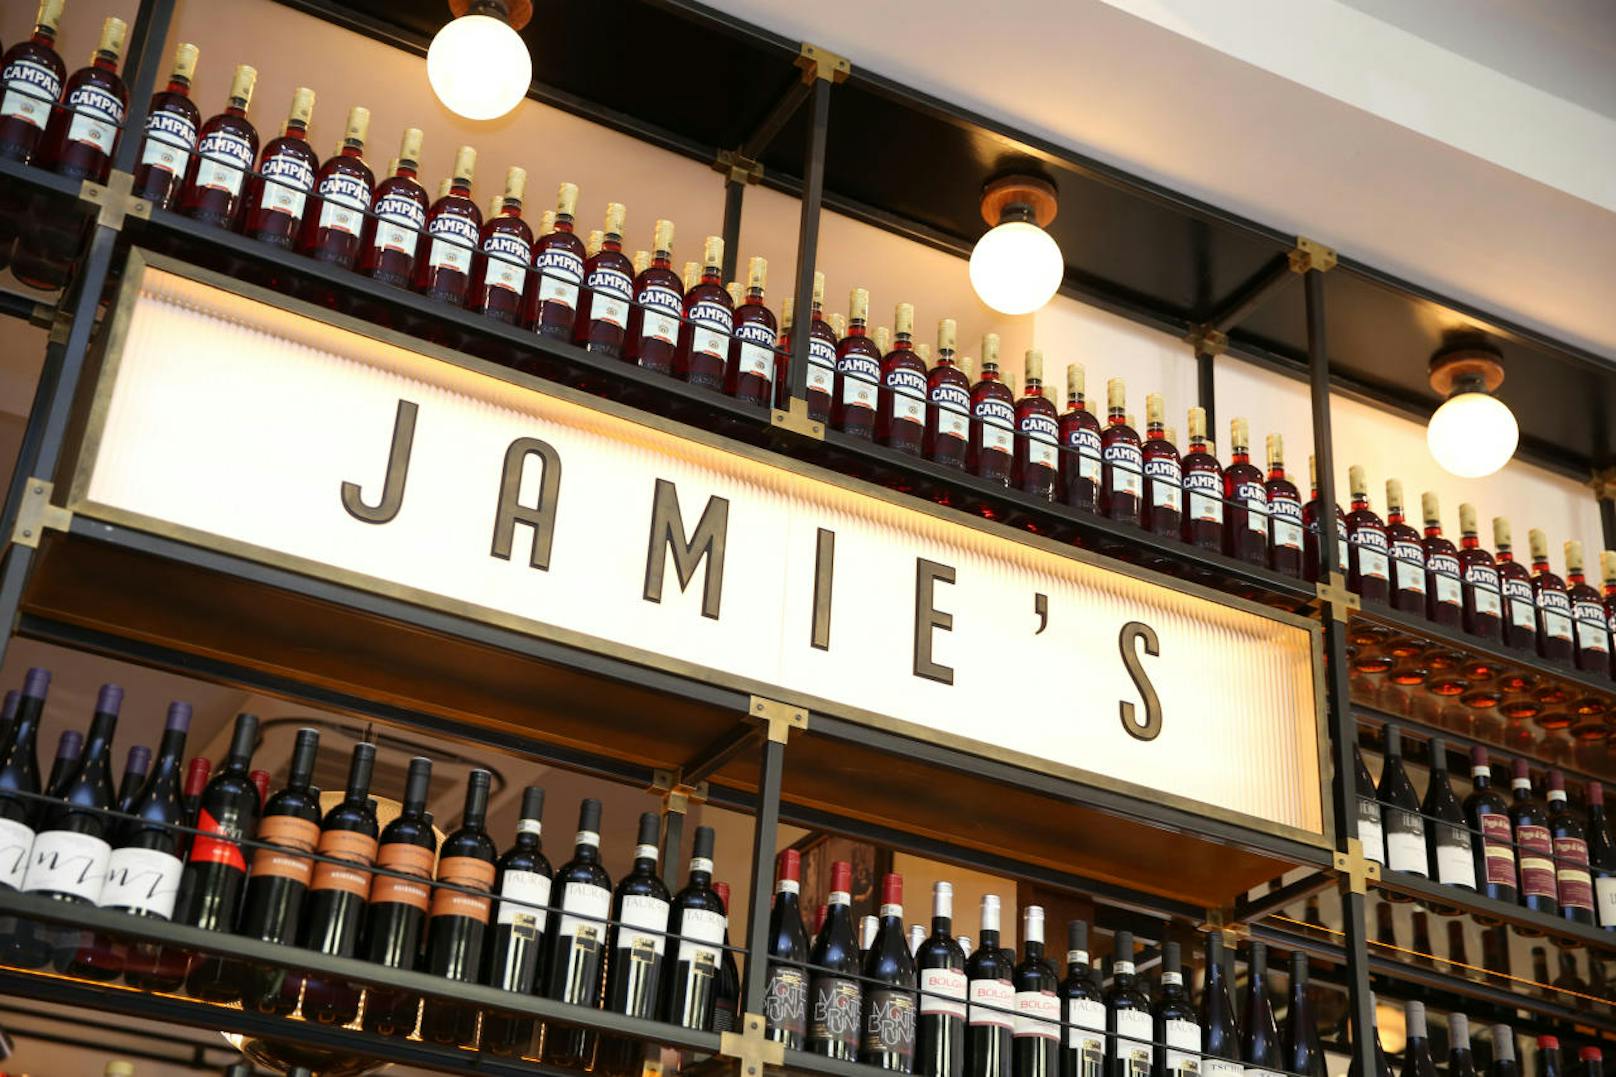 Um 11 Uhr besuchte der TV-Koch sein "Jamie's" am Dr. Karl-Lueger-Platz 5 in der Innenstadt.